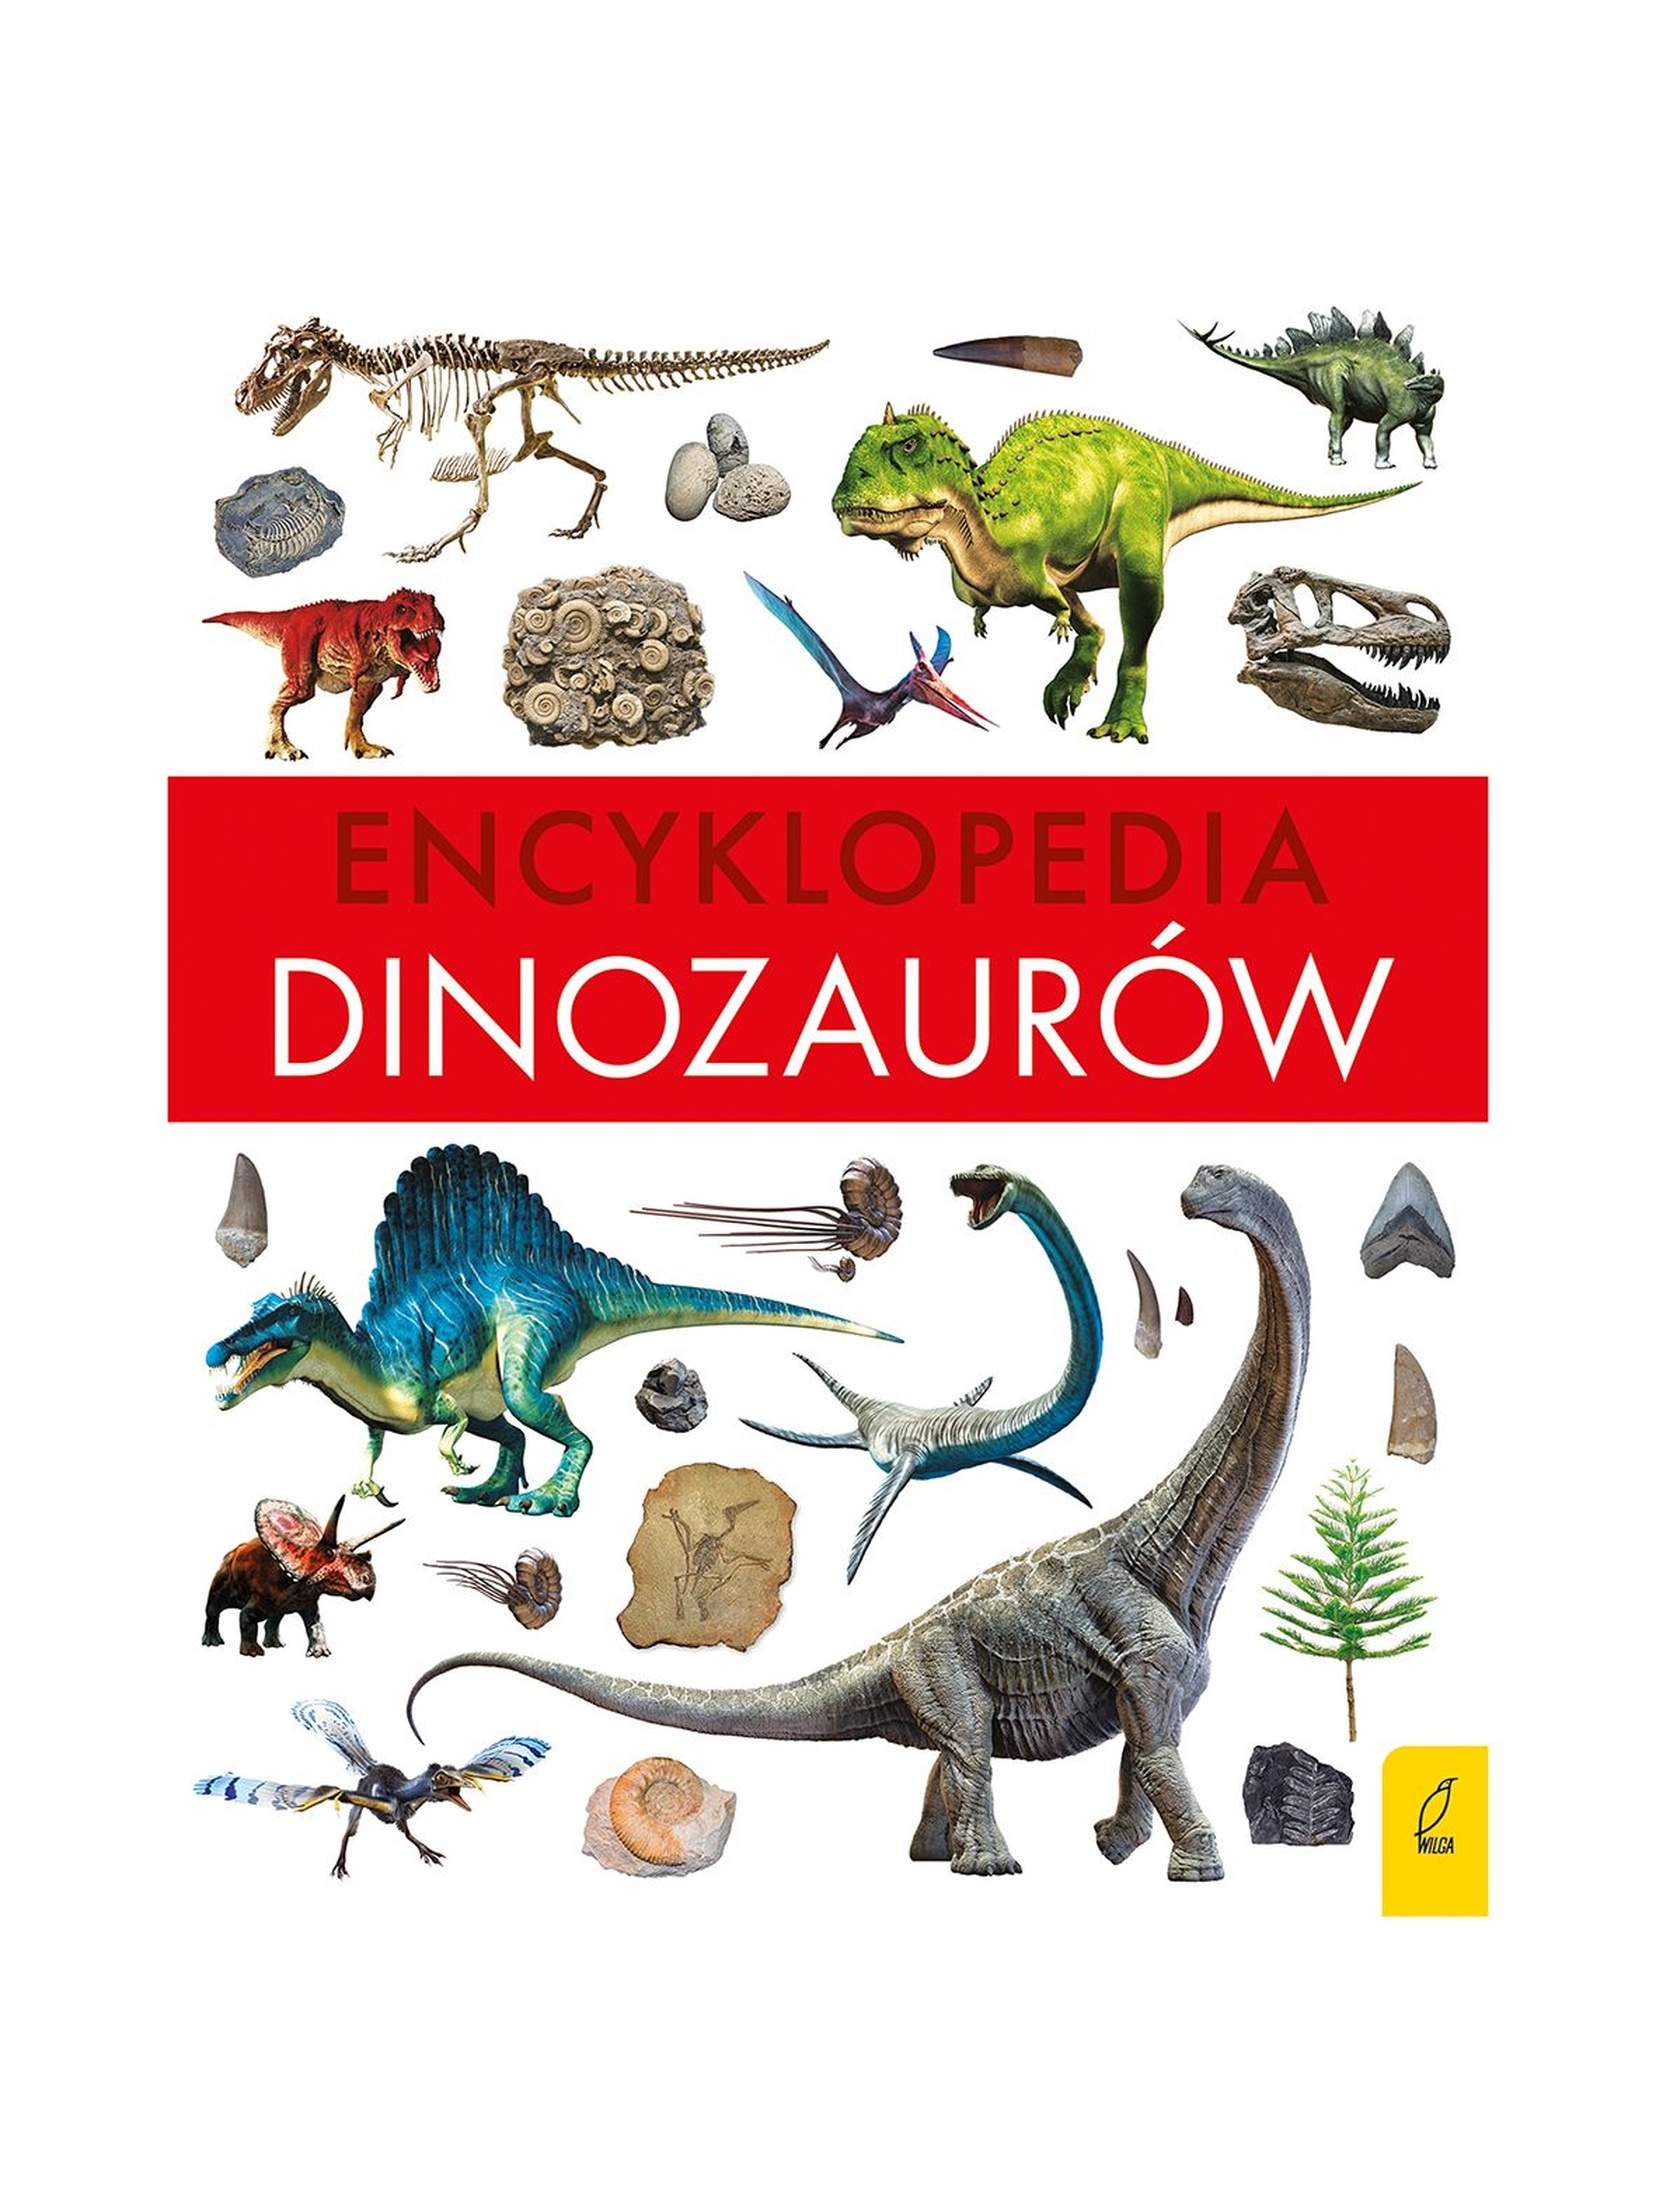 Encyklopedia dinozaurów - książka dla dzieci